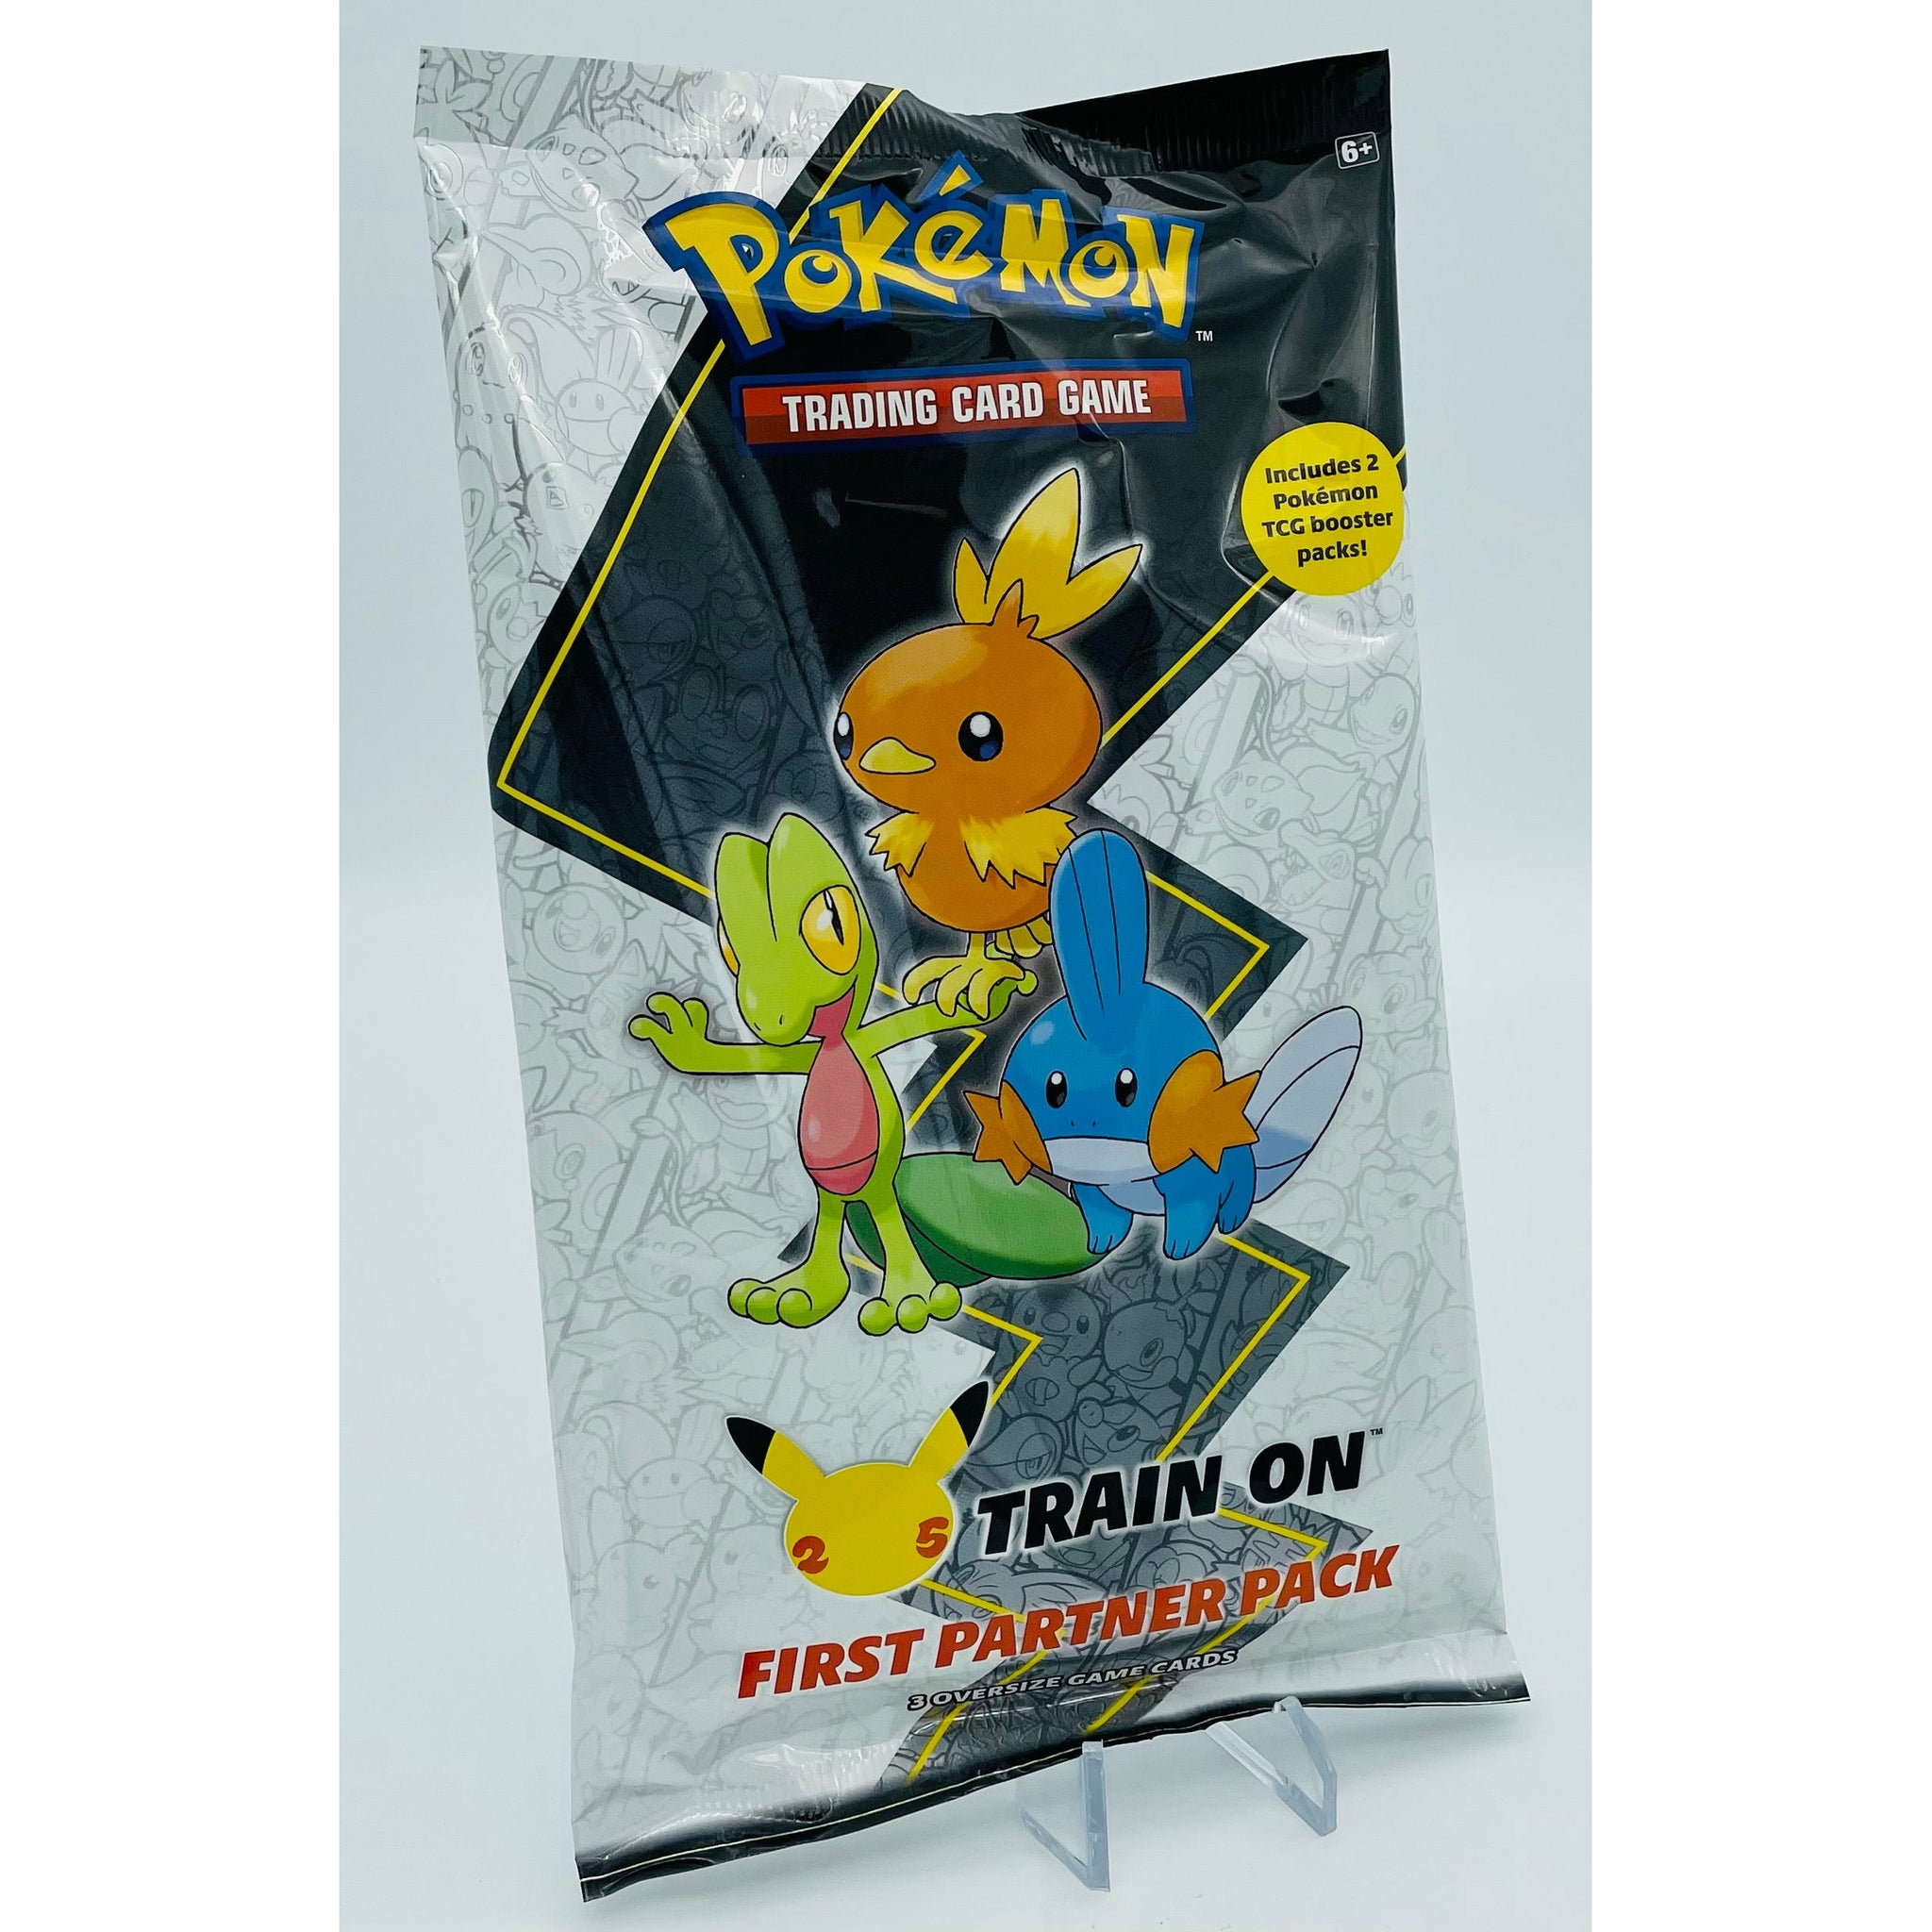 Pokemon TCG: First Partner Pack - 3 Jumbo HOENN Cards + 2 TCG Booster Packs